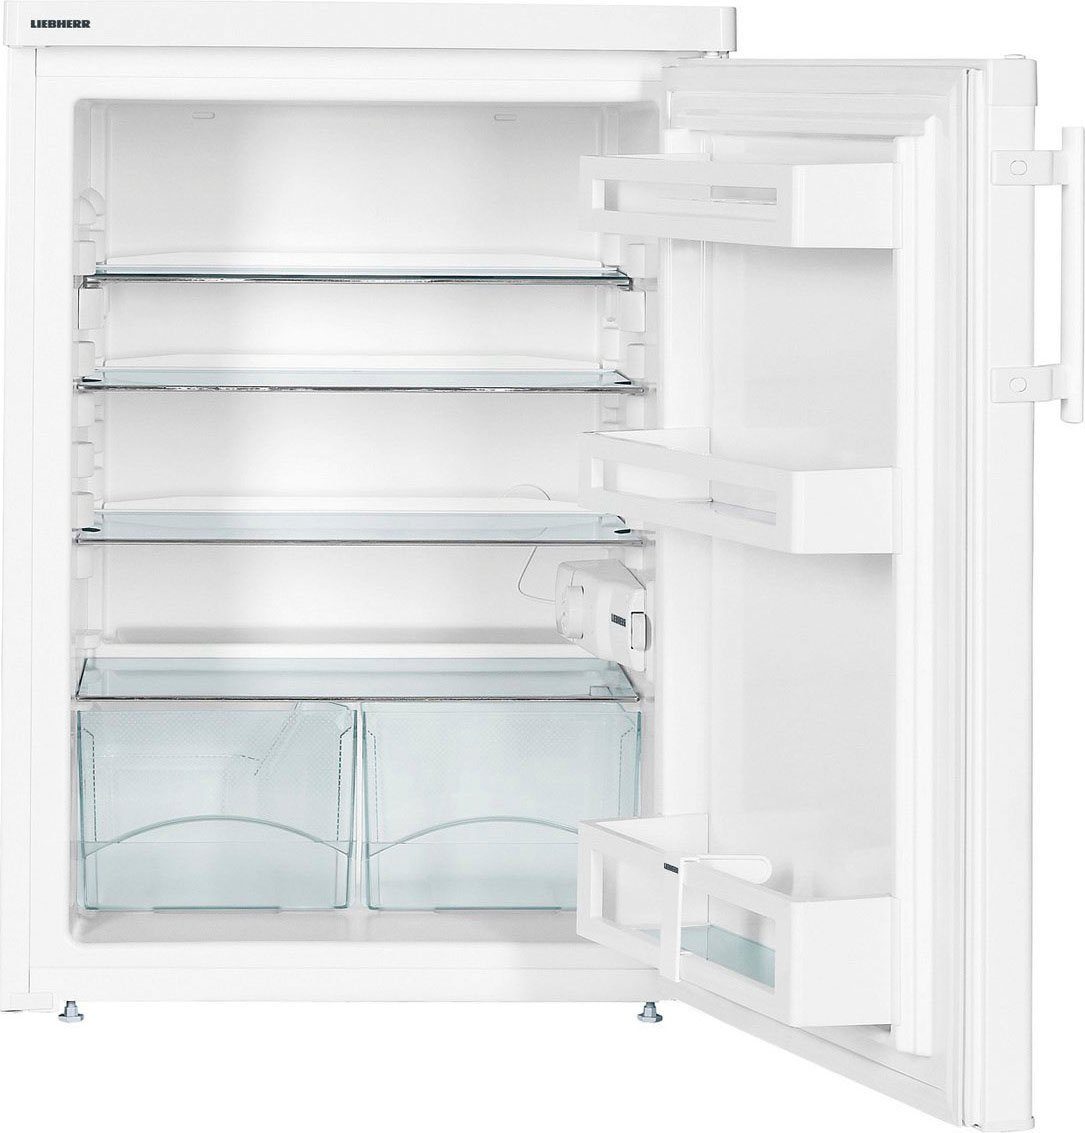 Liebherr Table Top Kühlschrank 85 hoch, TP cm Comfort 1720_993053251, cm 60,1 breit